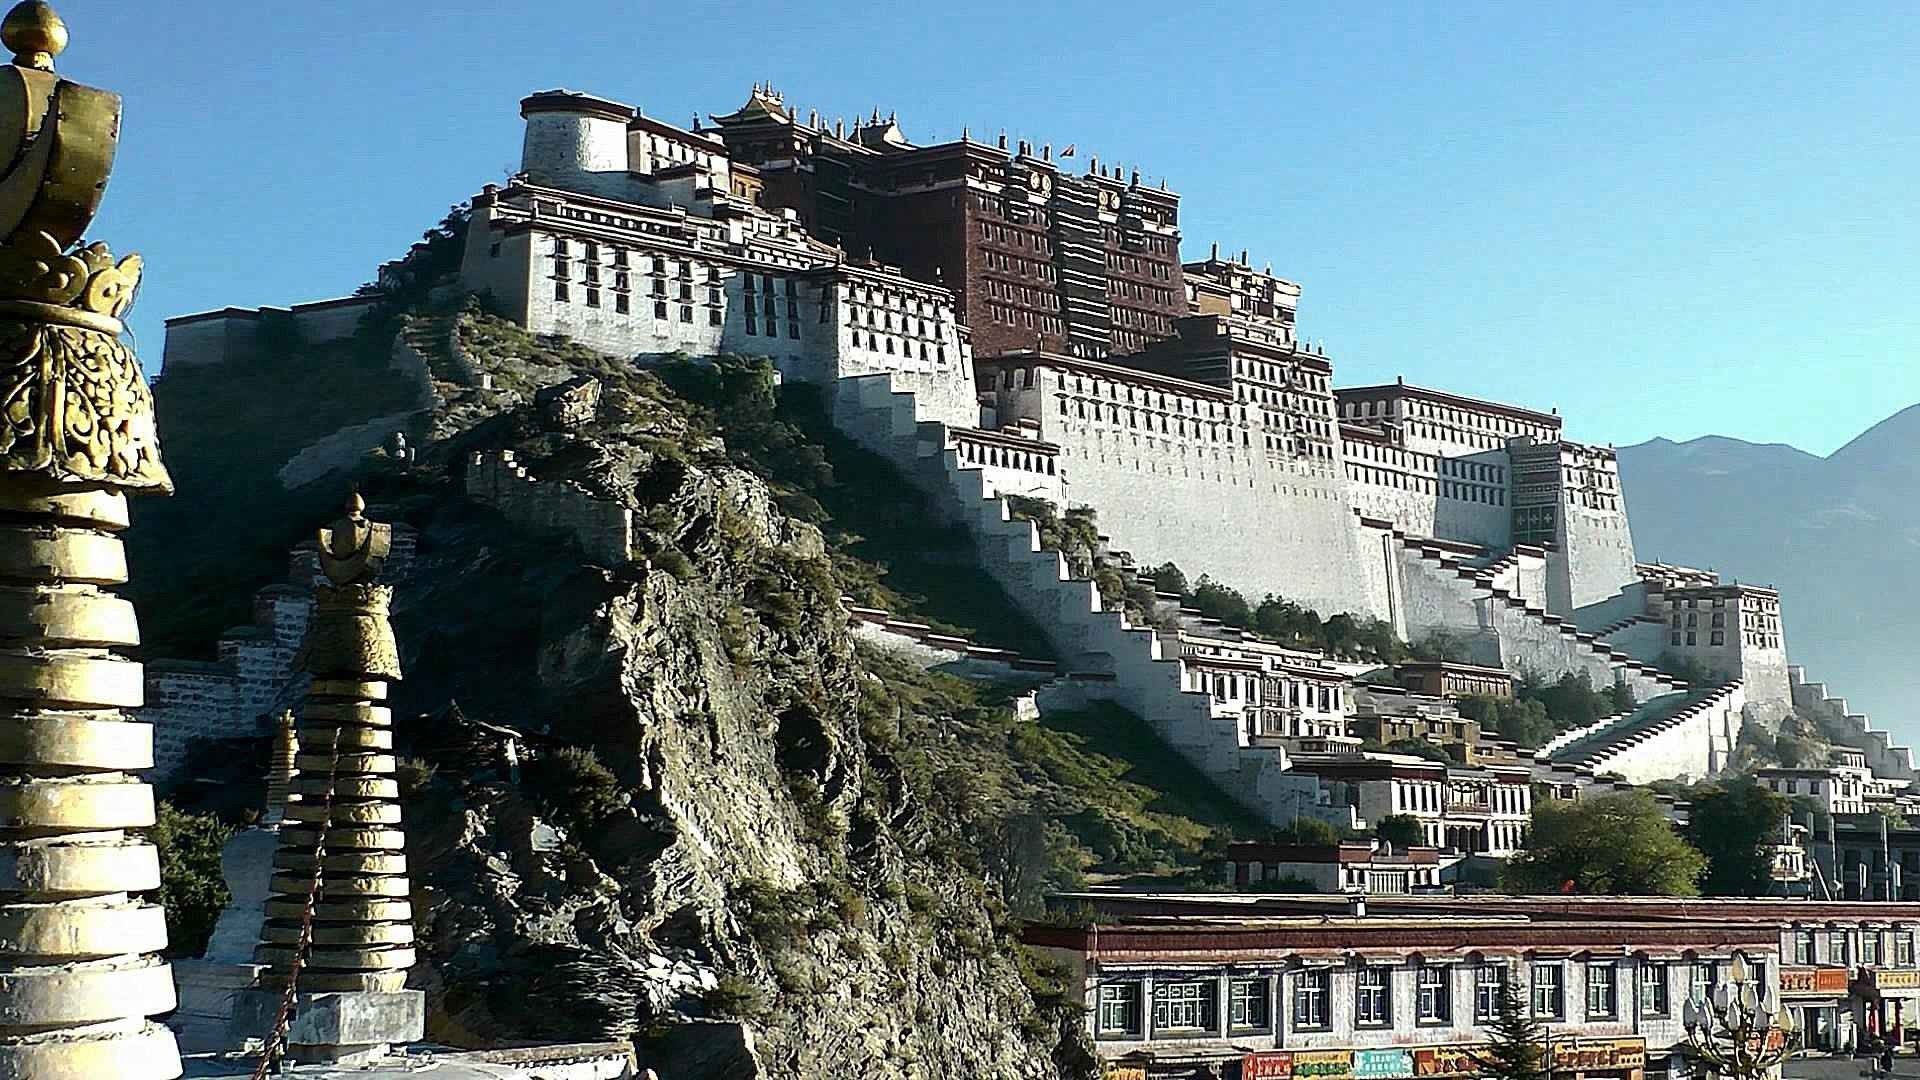 في التبت .. و أجمل اماكن سياحية مُذهلة - Tourism in Tibet ... and the most amazing and amazing tourist places